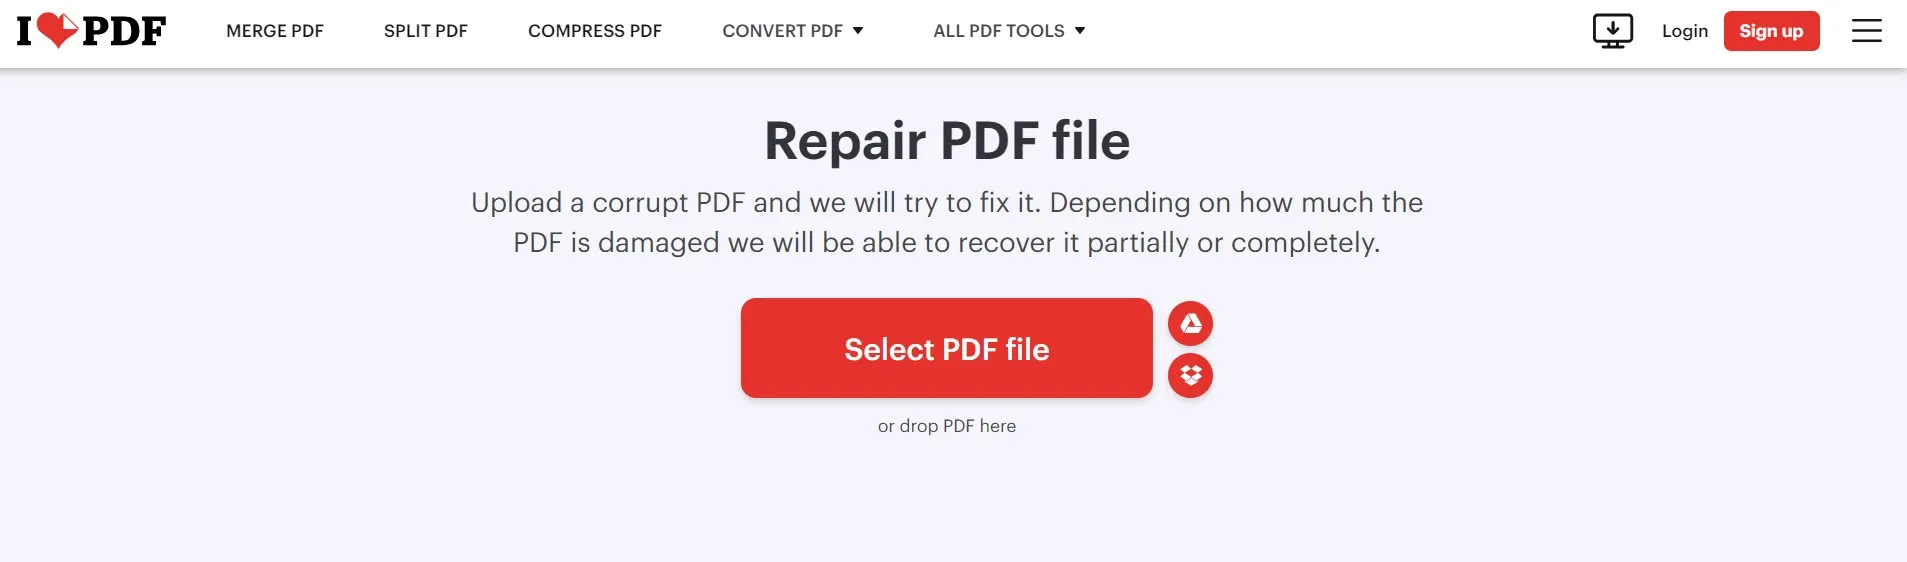 repair pdf file adobe select file ilovepdf